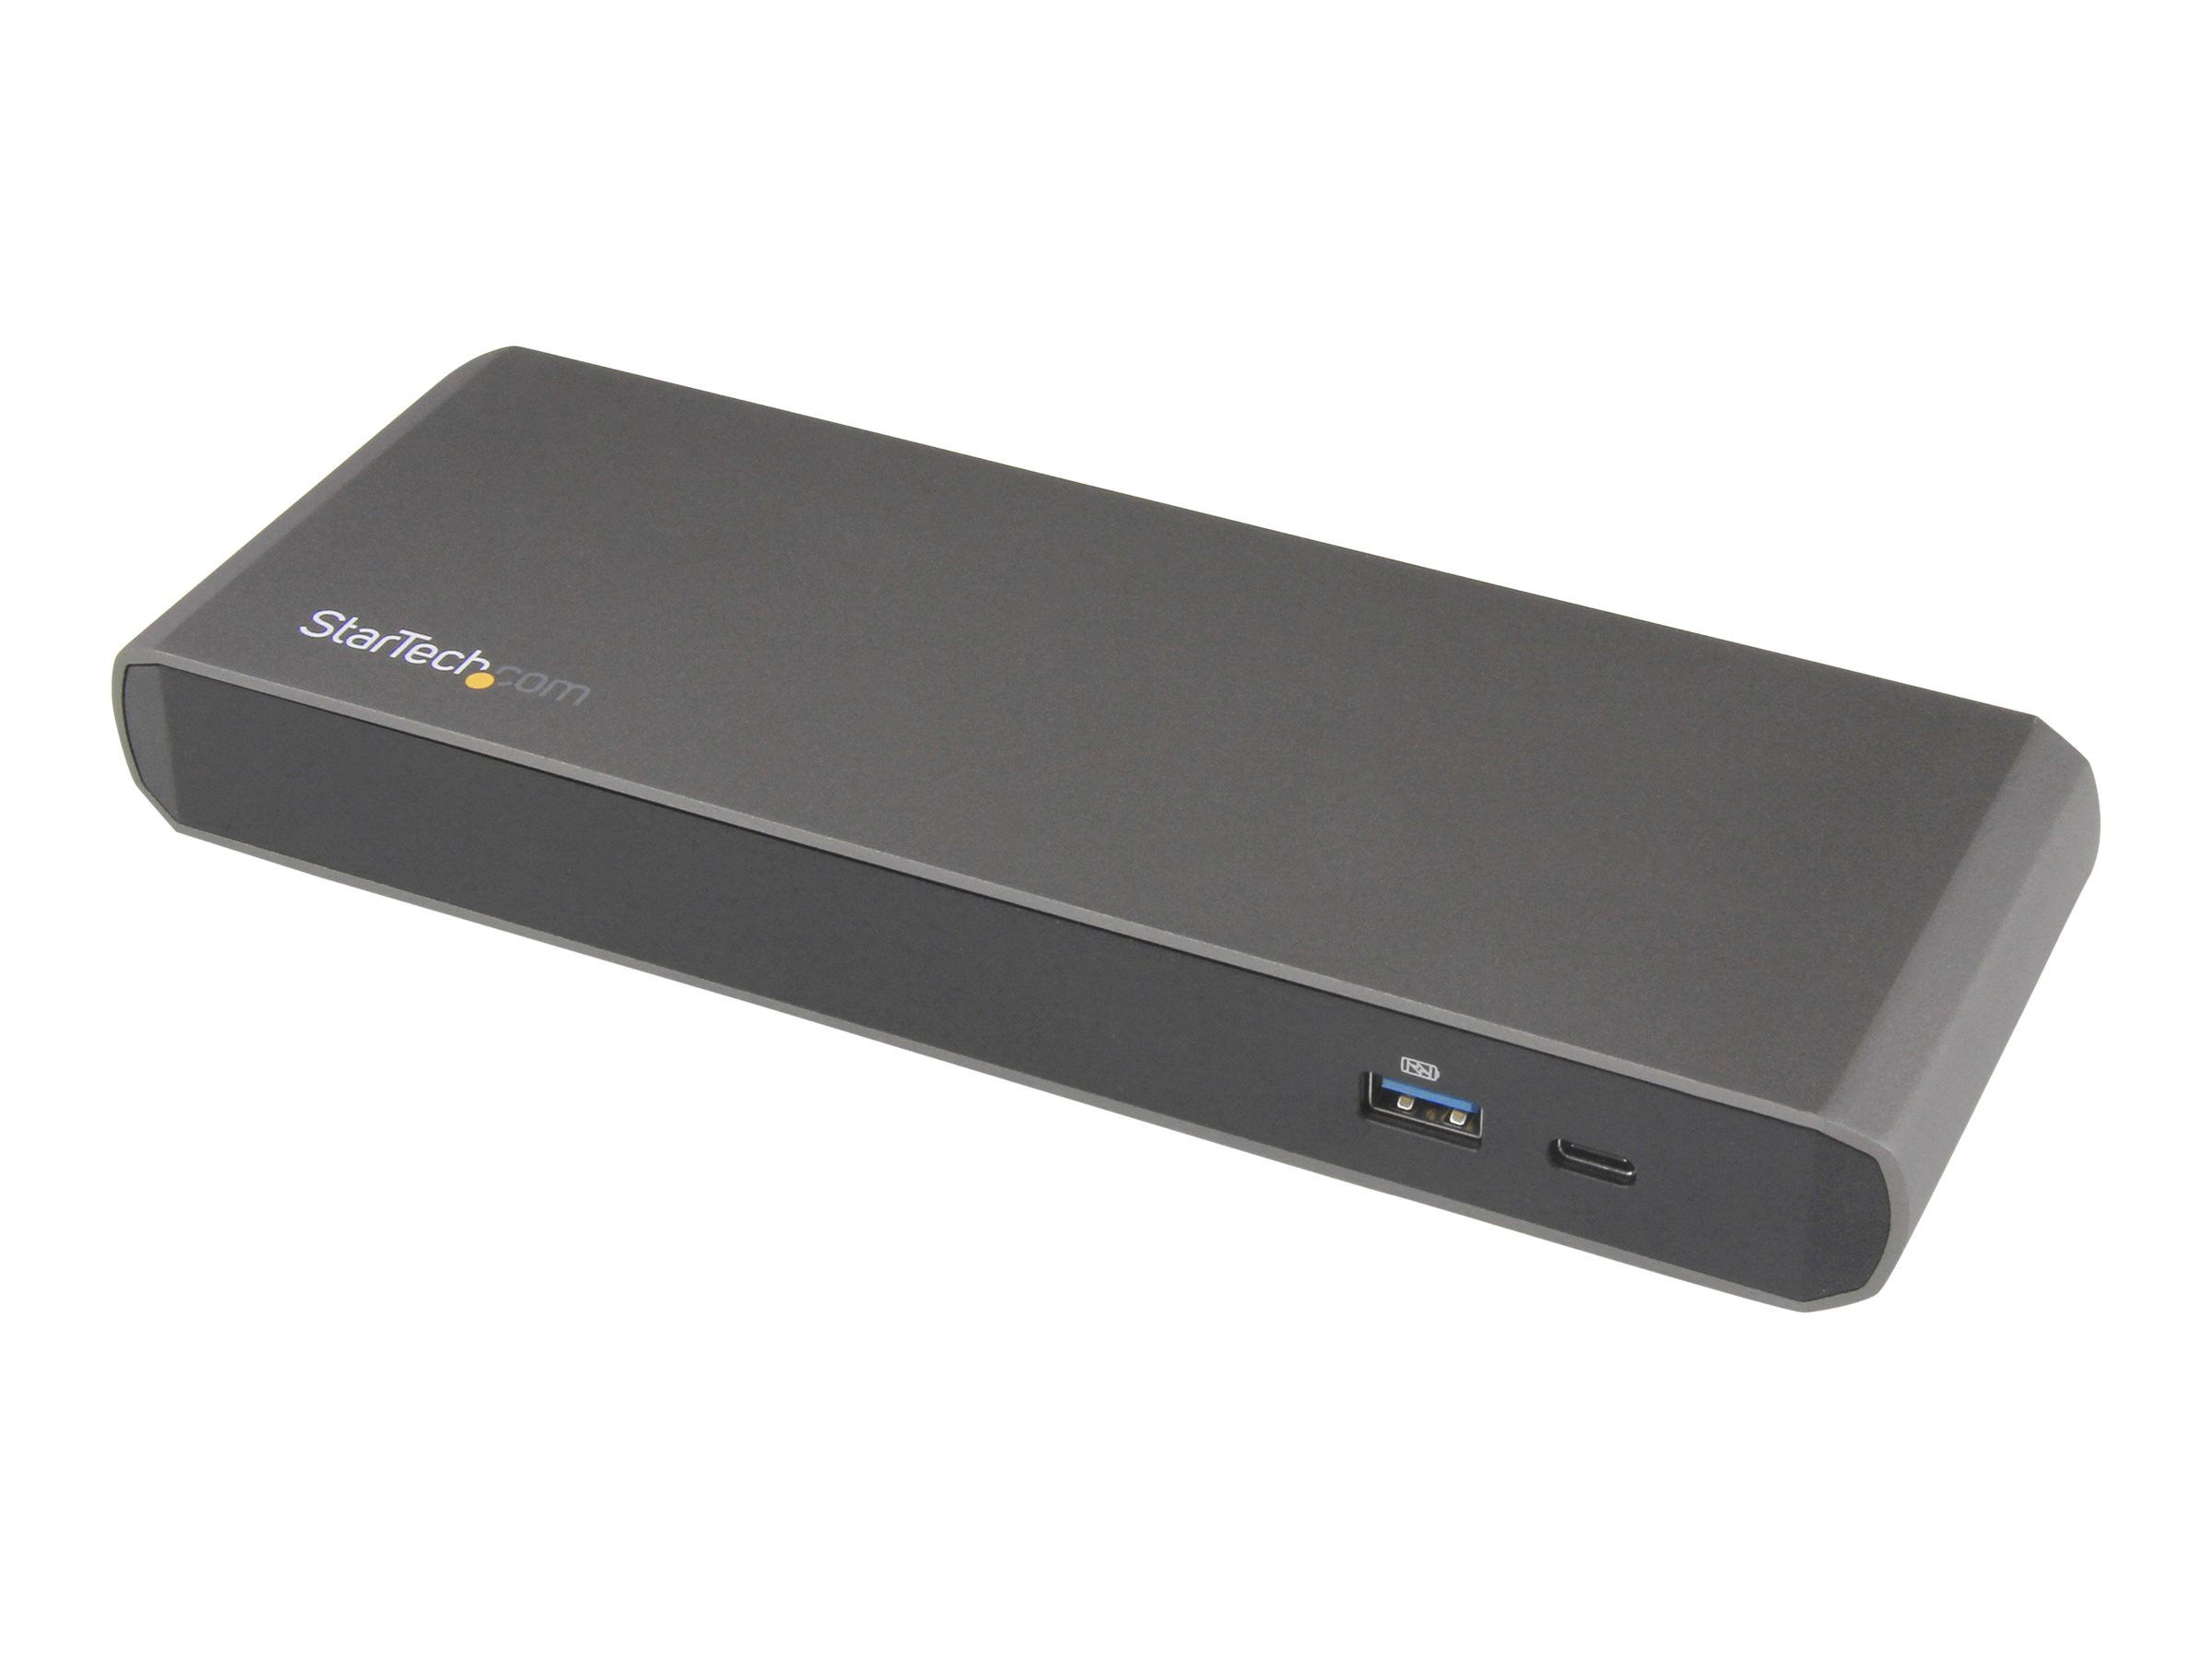 StarTech Thunderbolt 3 Dual-4K Dockingstation für Laptops - Mac und Windows mit Netzteil + USB-C Kabel